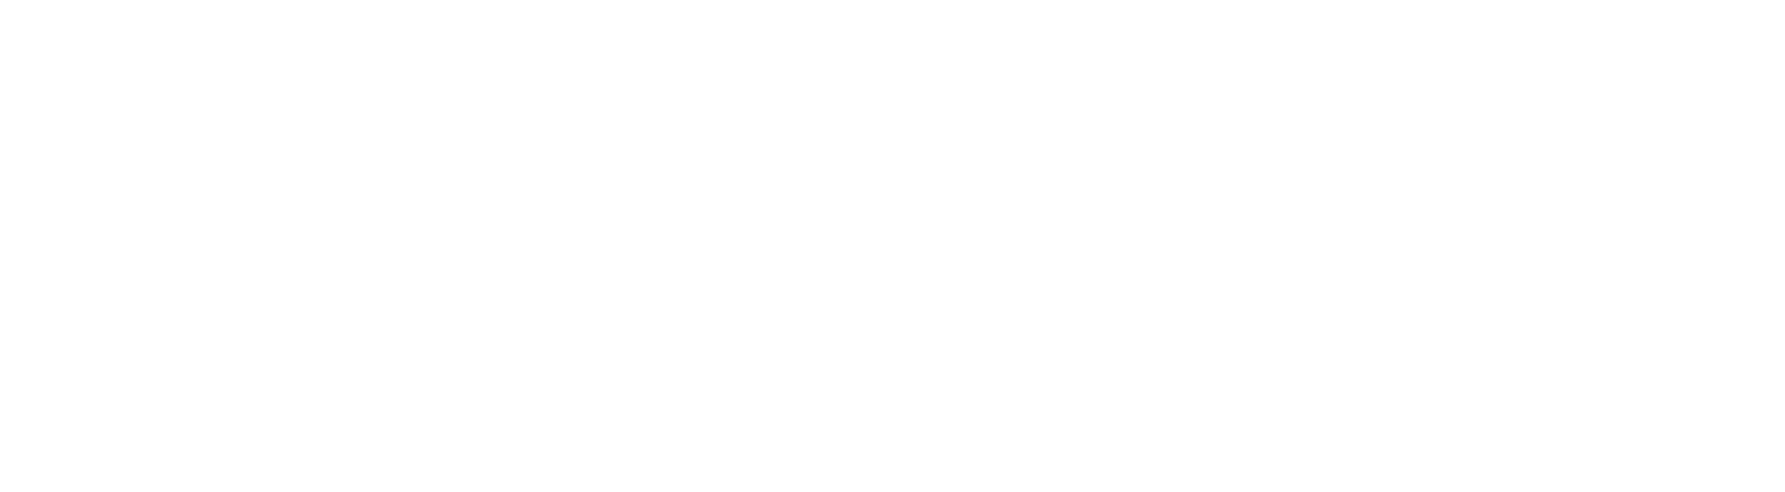 Colonos Estudio Creativo Logo